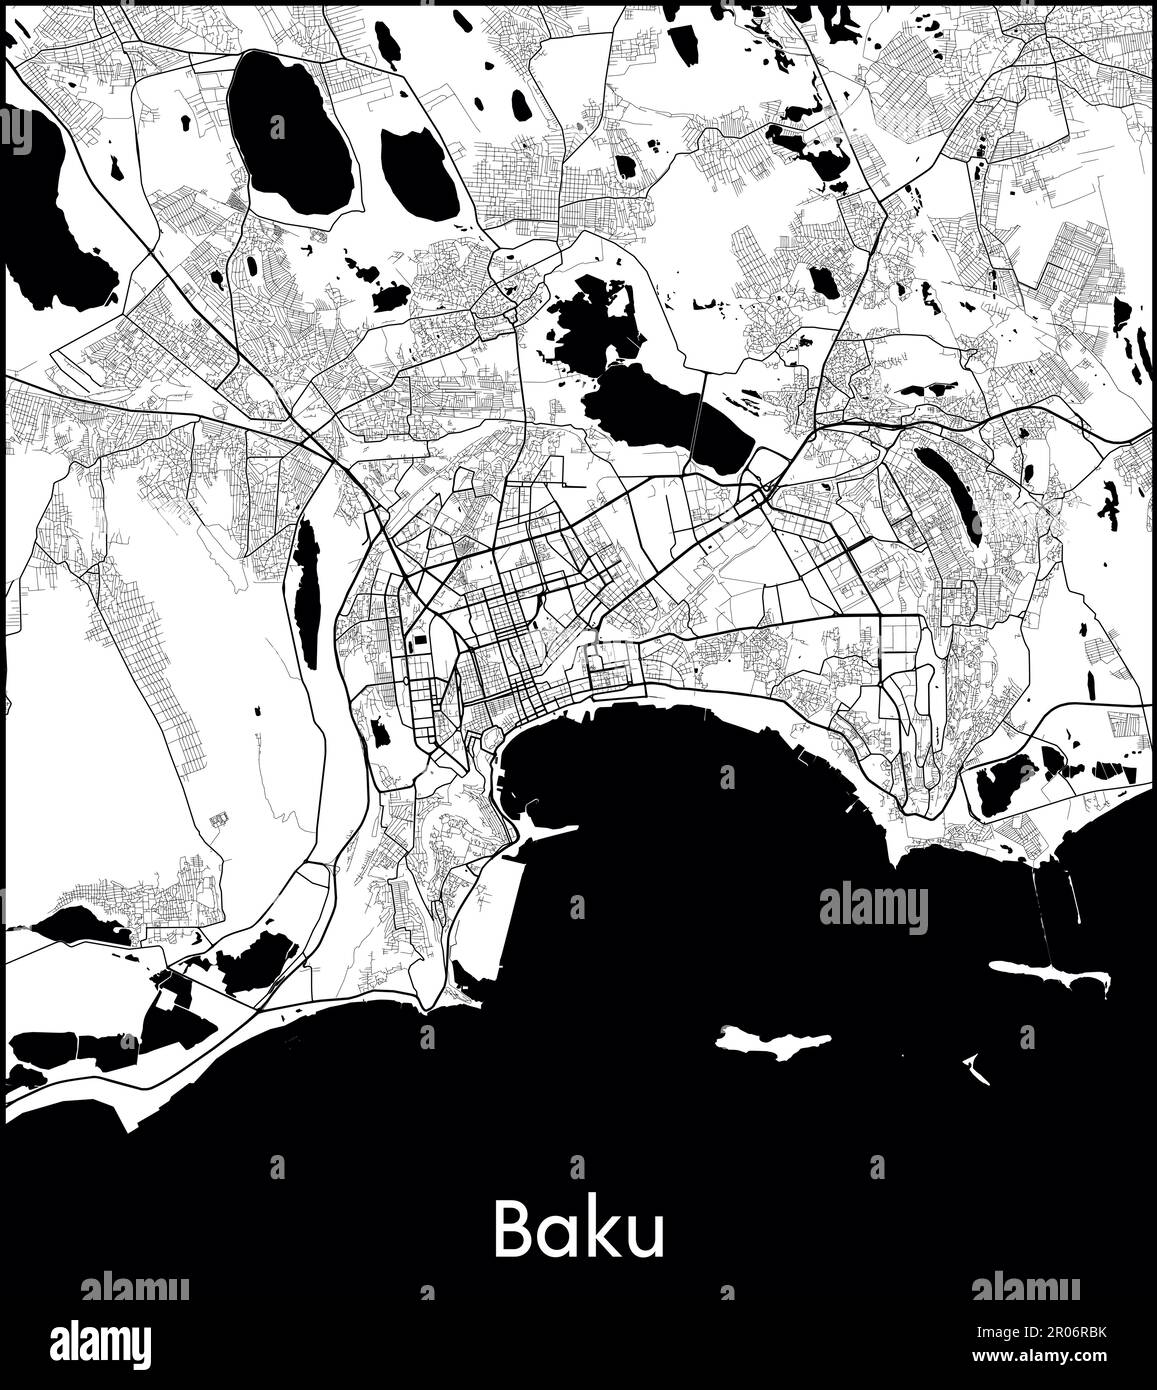 City Map Asia Azerbaijan Baku vector illustration Stock Vector